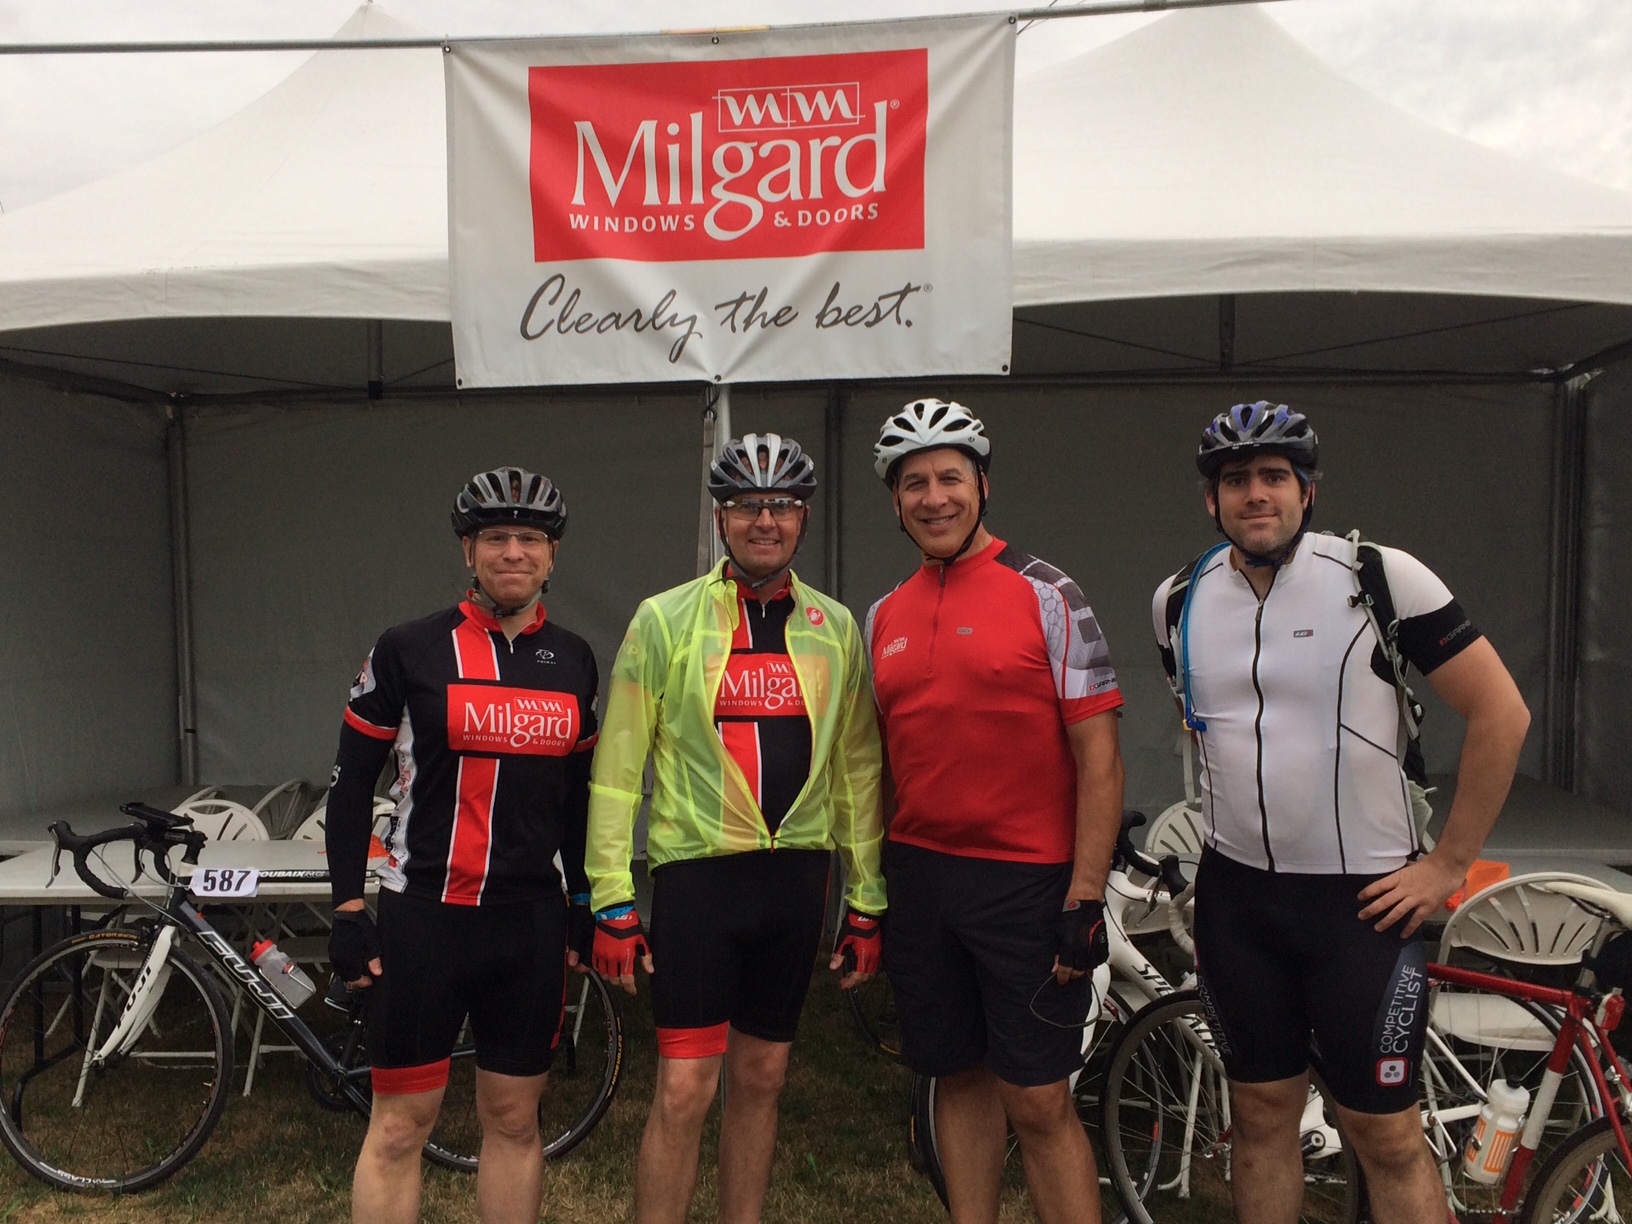 Milgard Bike MS Rider Team